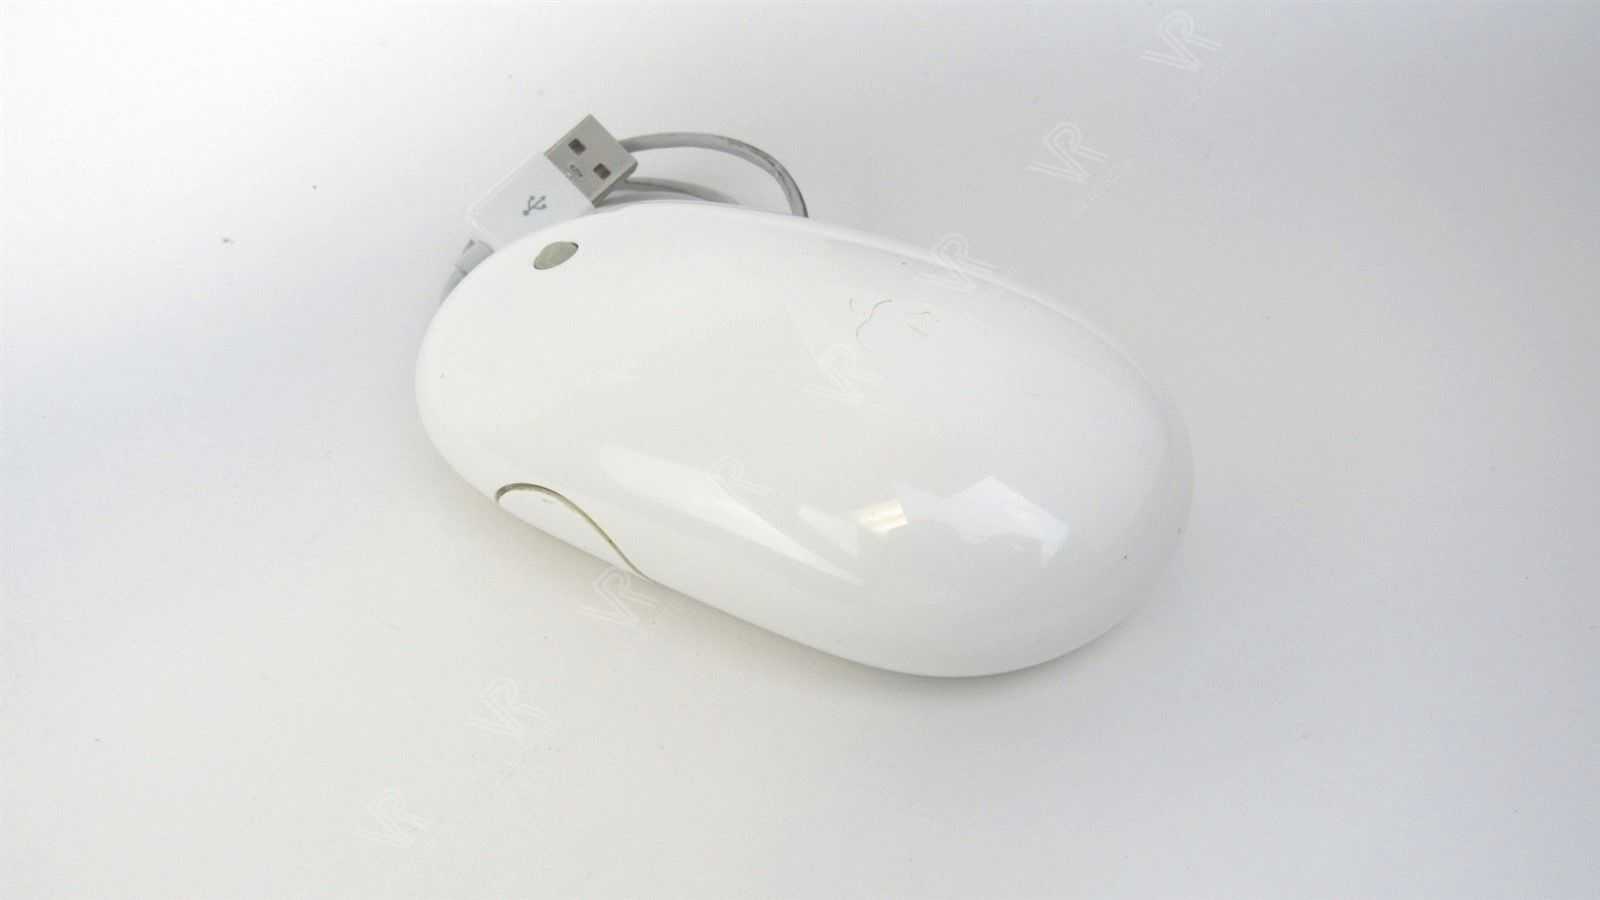 Мышь проводная apple mb112 mighty mouse white usb (белый) (mb112zm/c) купить от 1229 руб в ростове-на-дону, сравнить цены, отзывы, видео обзоры и характеристики